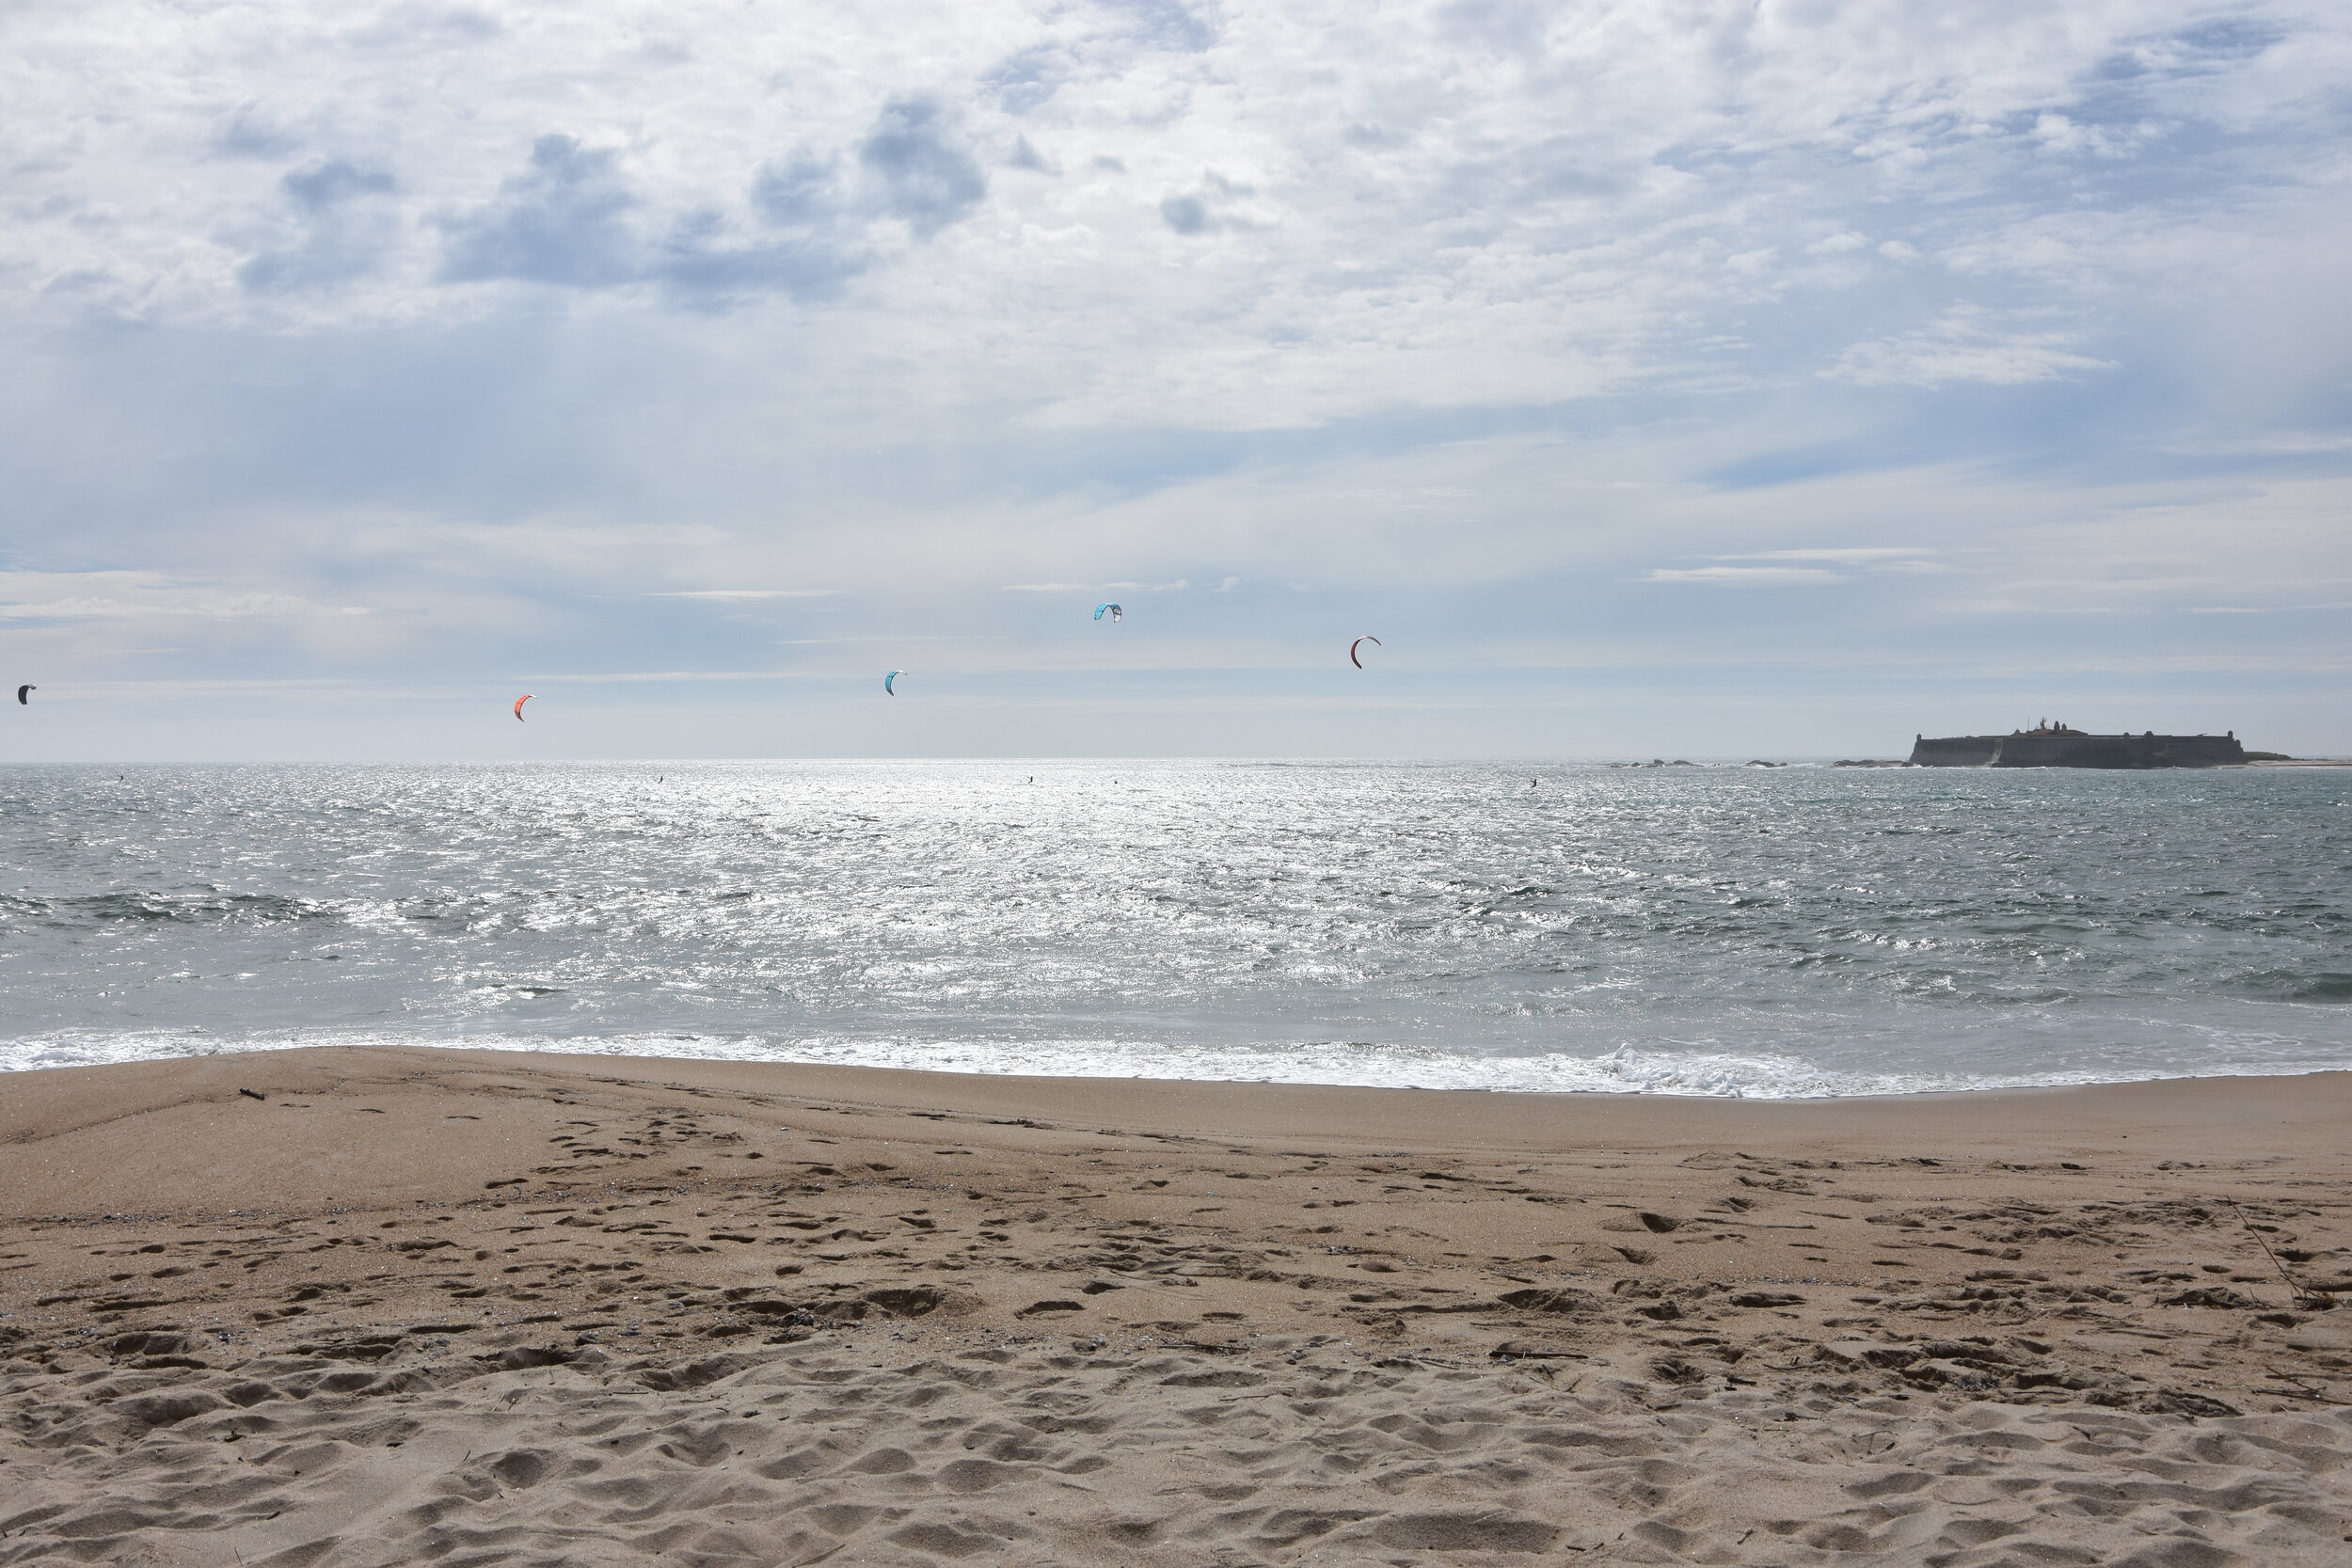 莫雷多海滩风筝冲浪学校-风筝控制。jpg